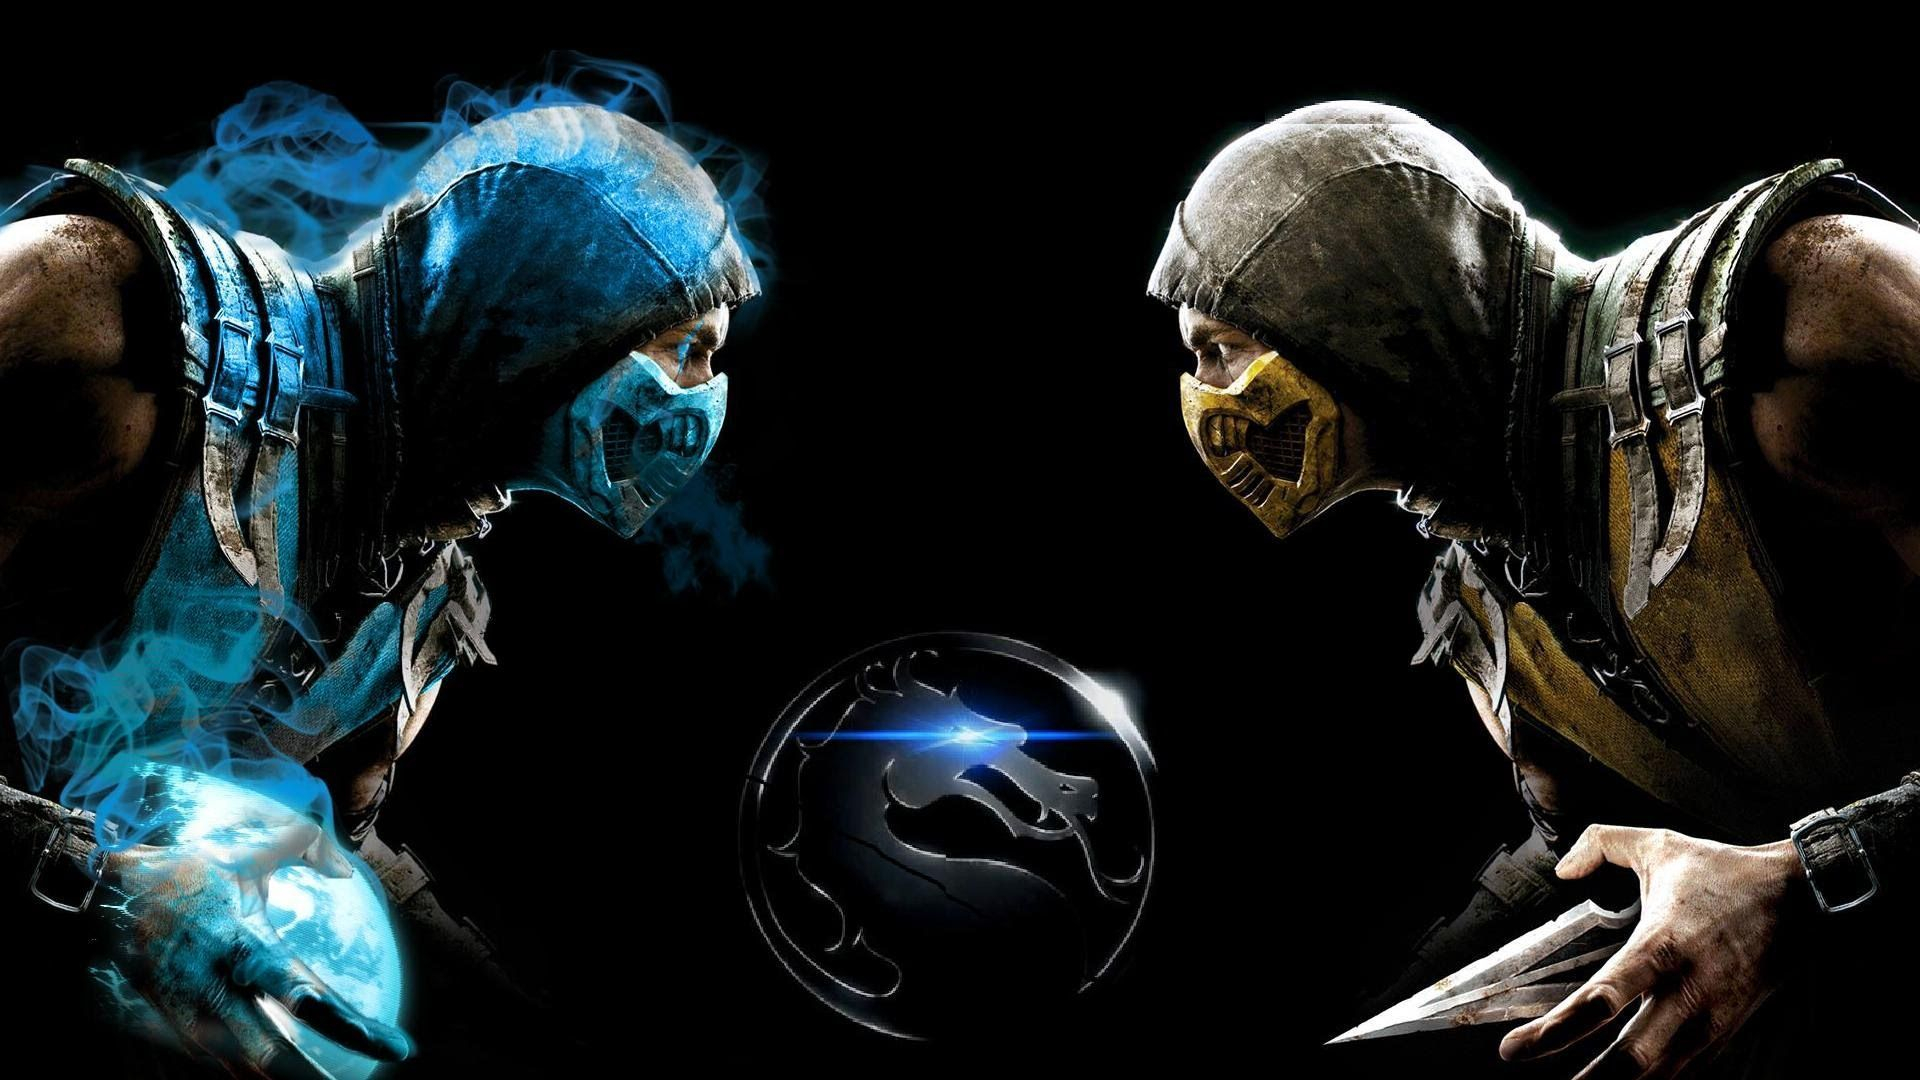 1920x1080 Mortal Kombat Scorpion vs Sub-Zero Wallpapers Top Free Mortal Kombat Scorpion vs Sub-Zero Backgrounds